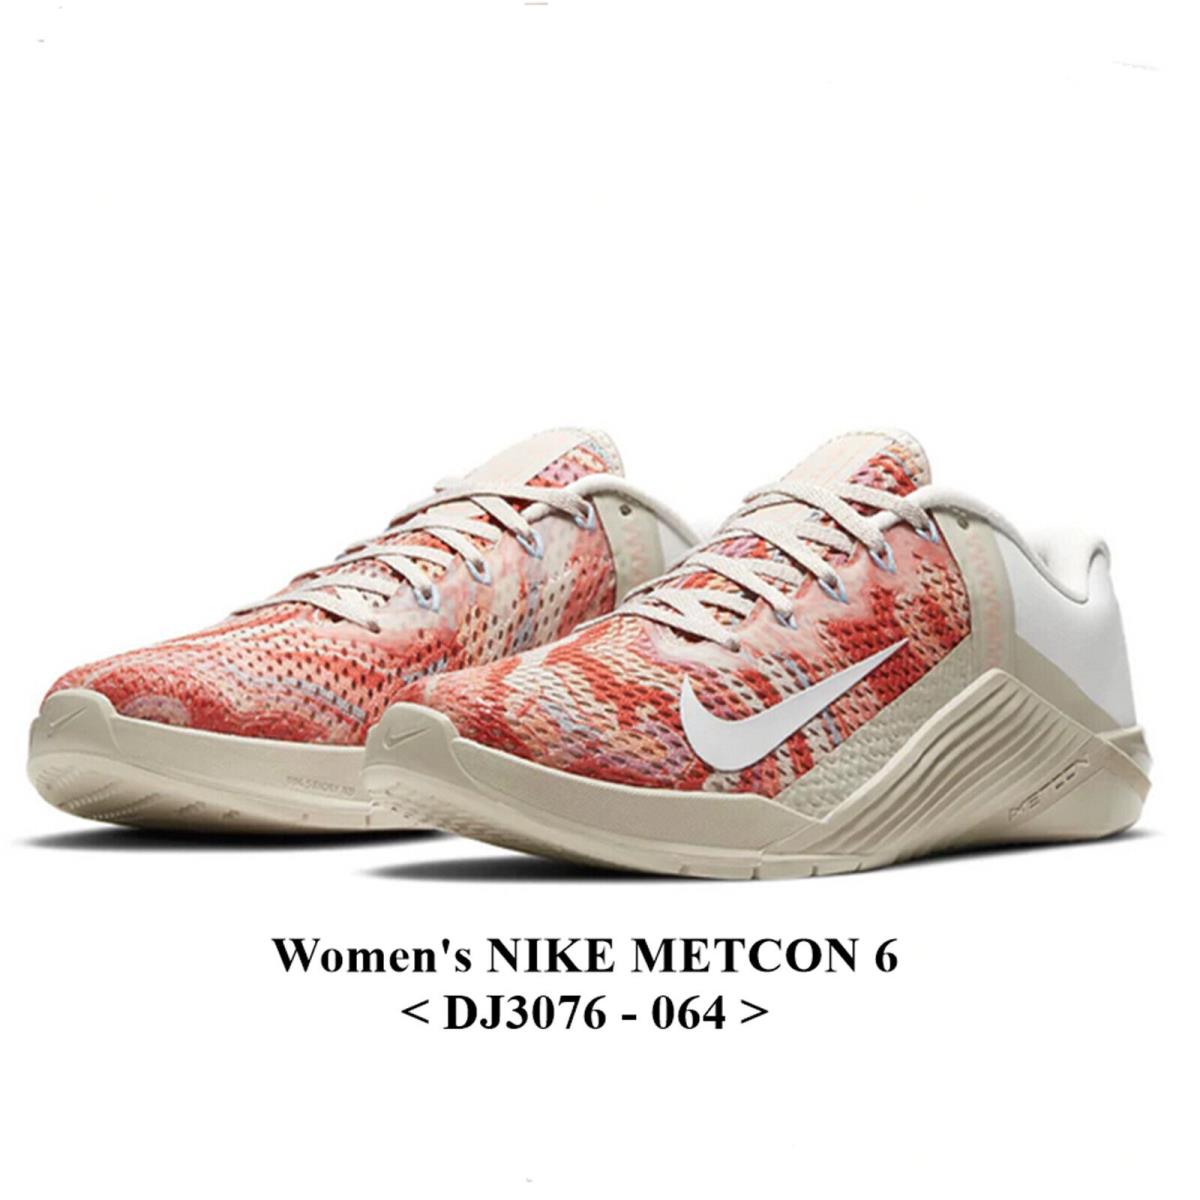 Women`s metcon6 nike Nike Metcon 6 DJ3076 - 064 Women`s Training Shoes.nwb NO Lid